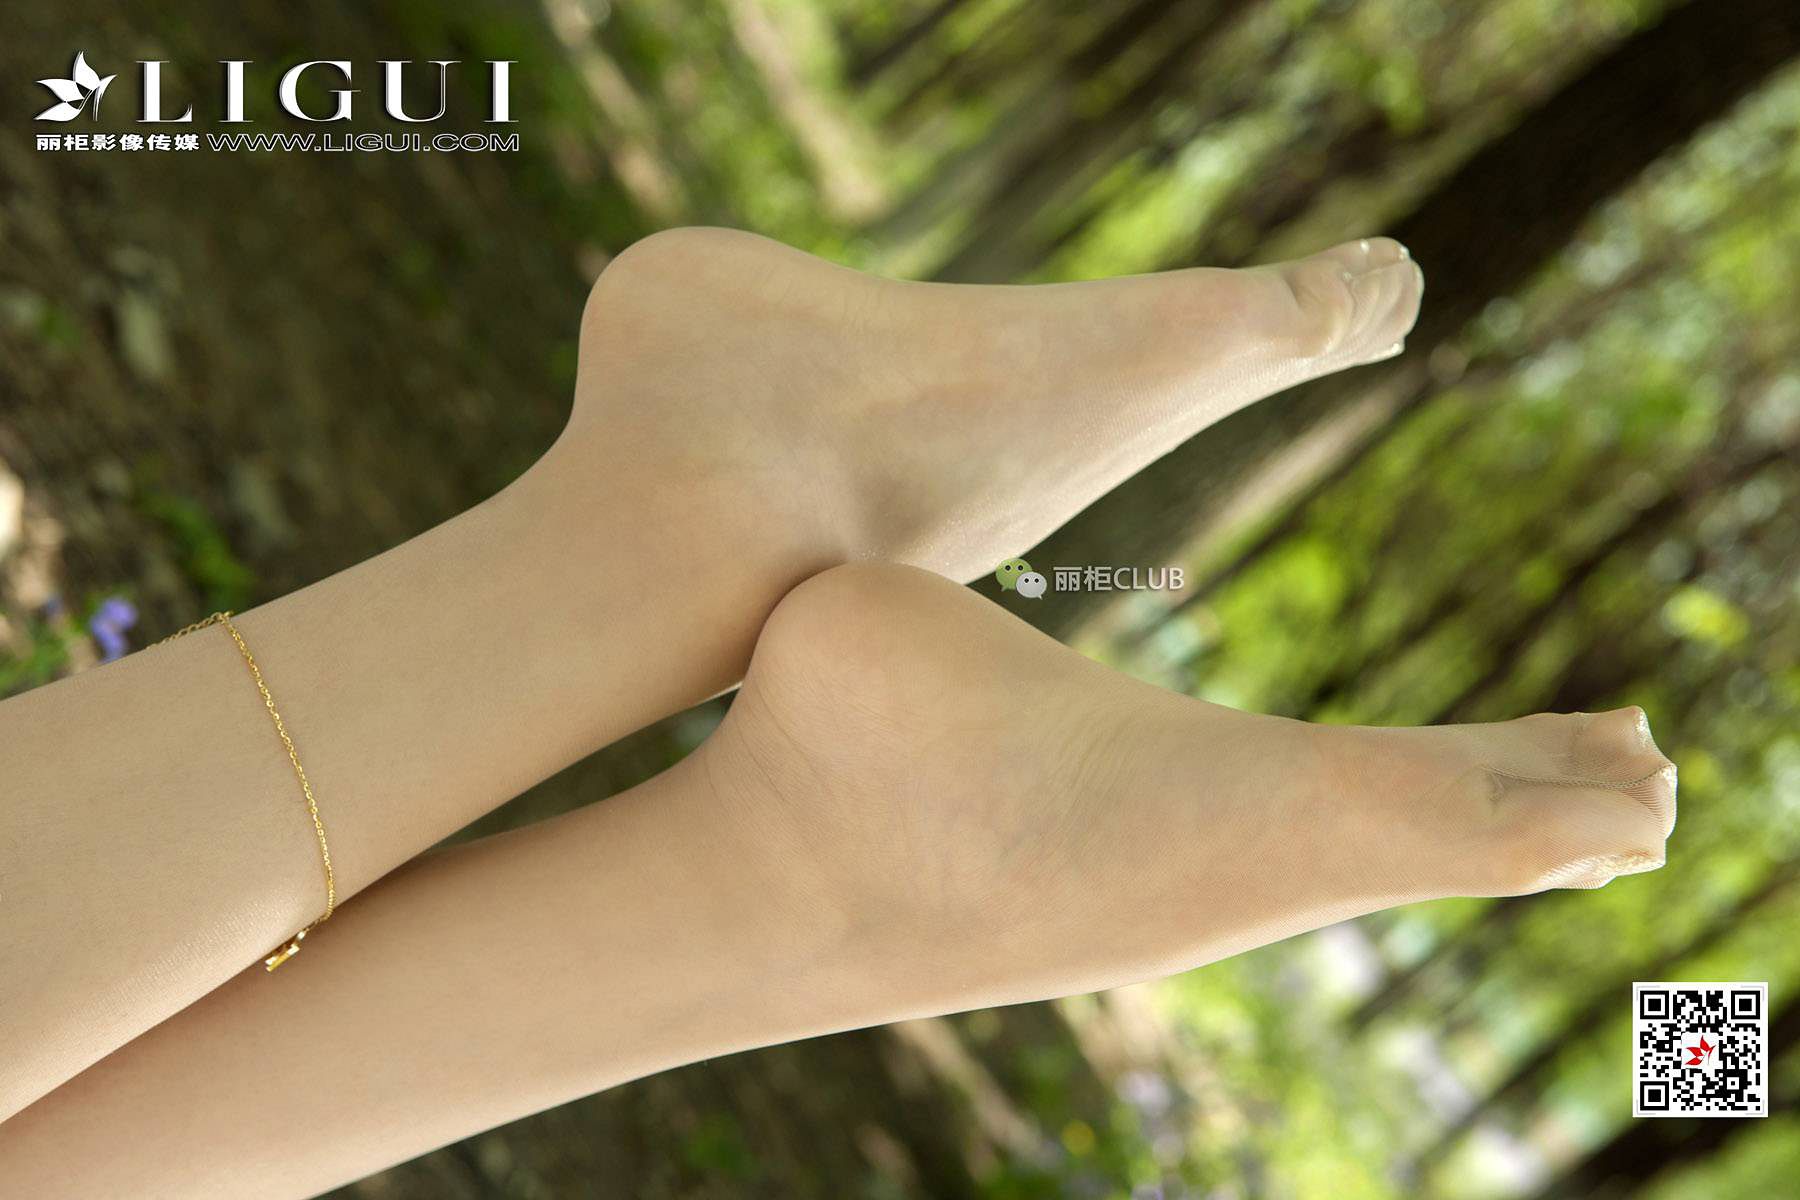 Leg model “fruit silk foot” [柜 liGUI] beauty leg silk foot photo collection